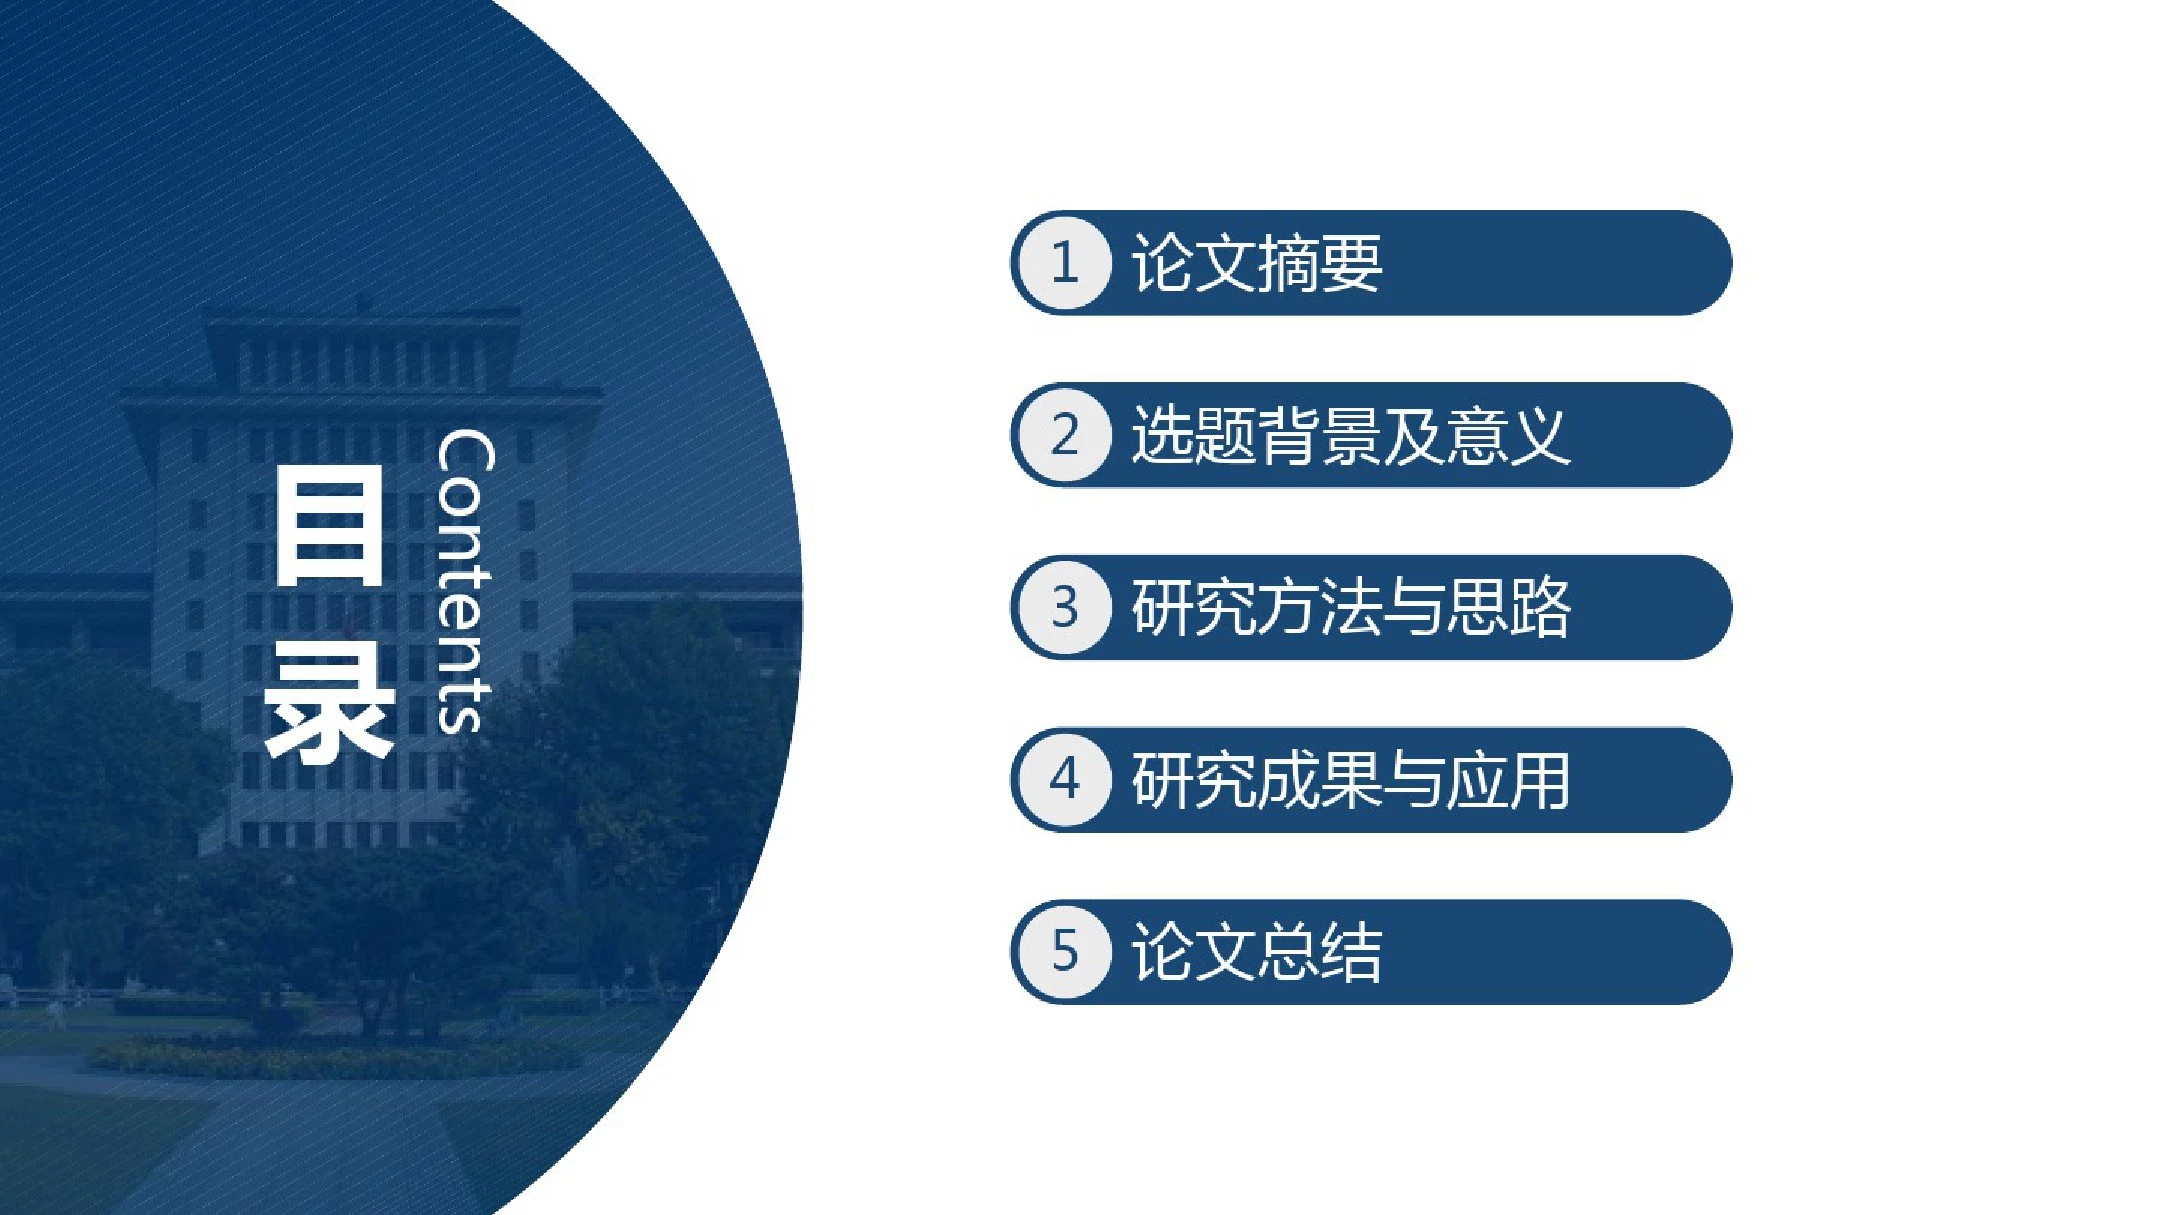 实用性强的浙江大学毕业论文答辩通用模板(20201021130829)